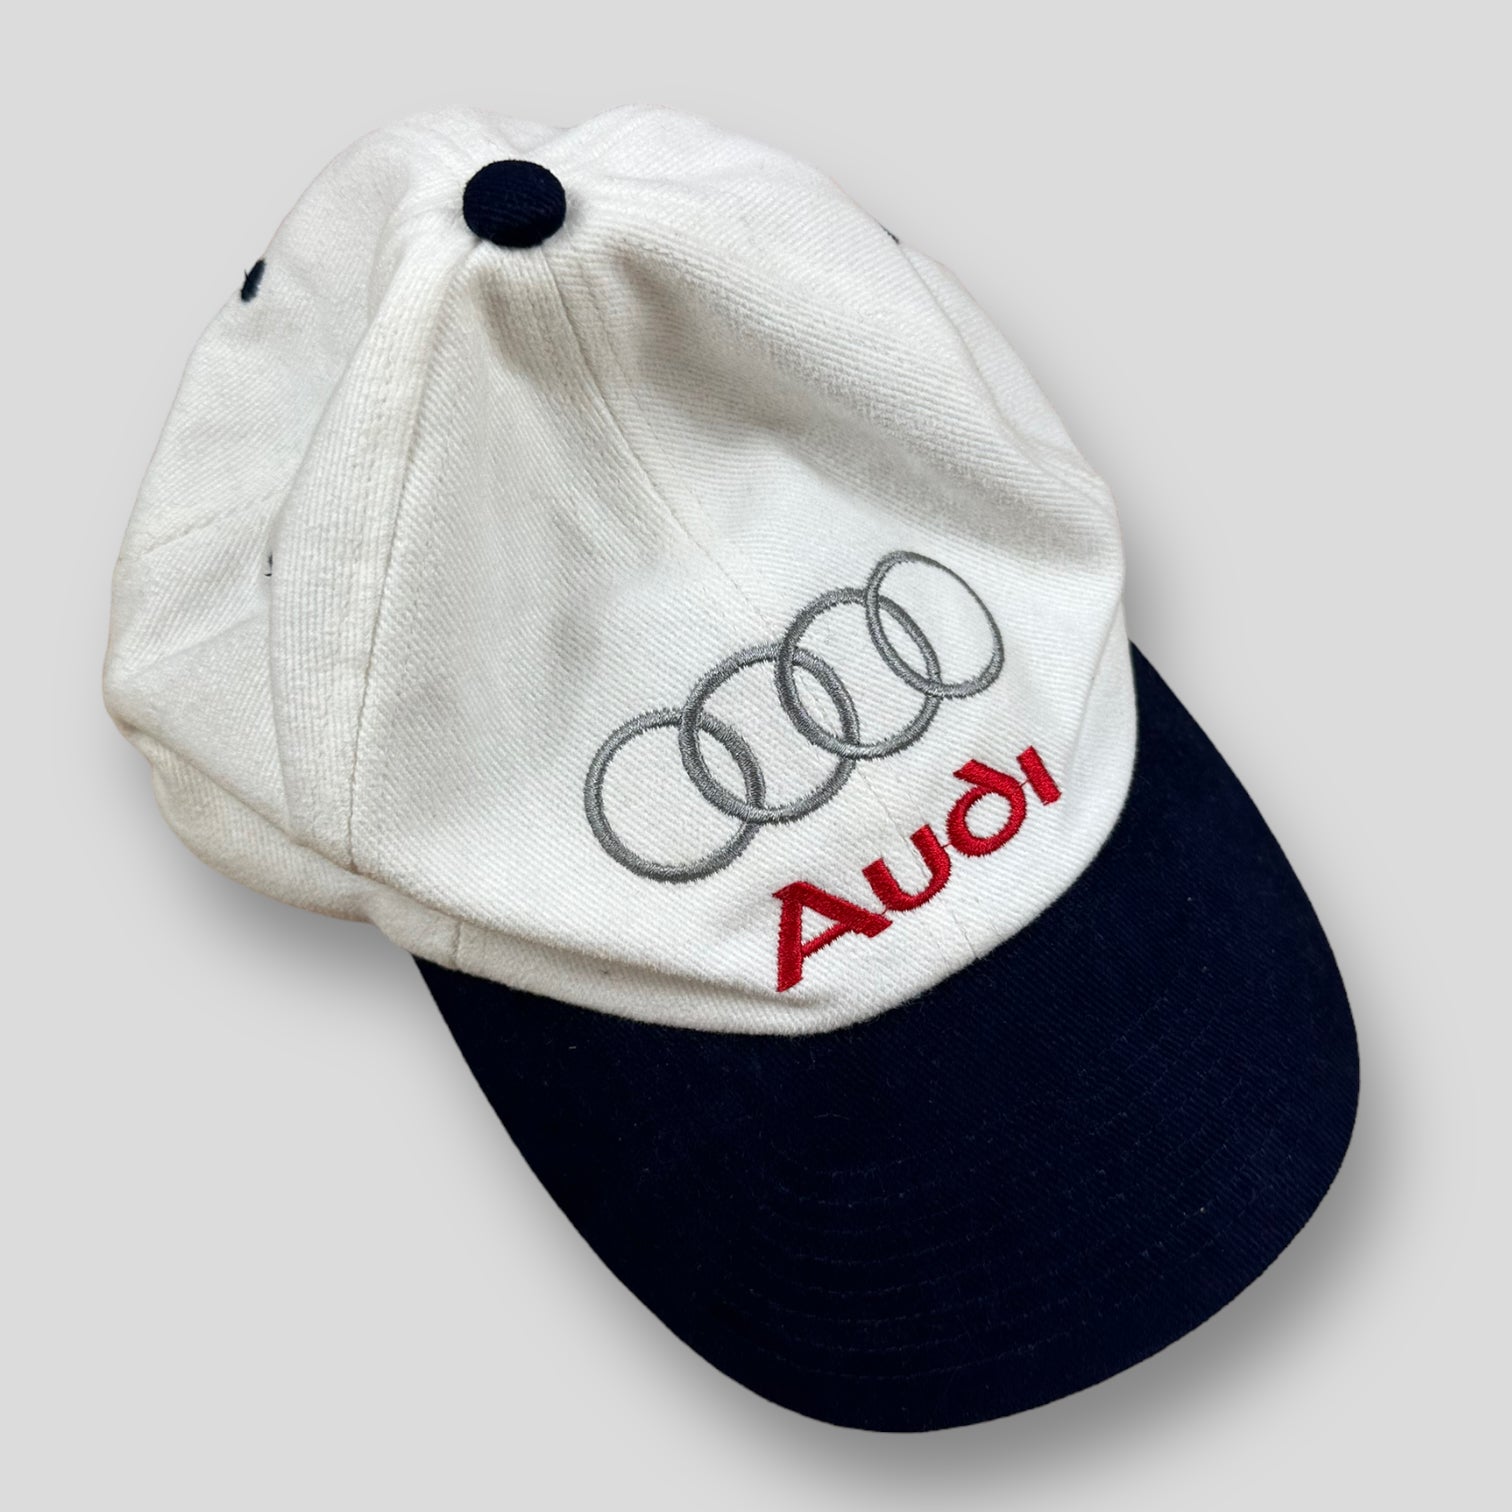 Audi cap